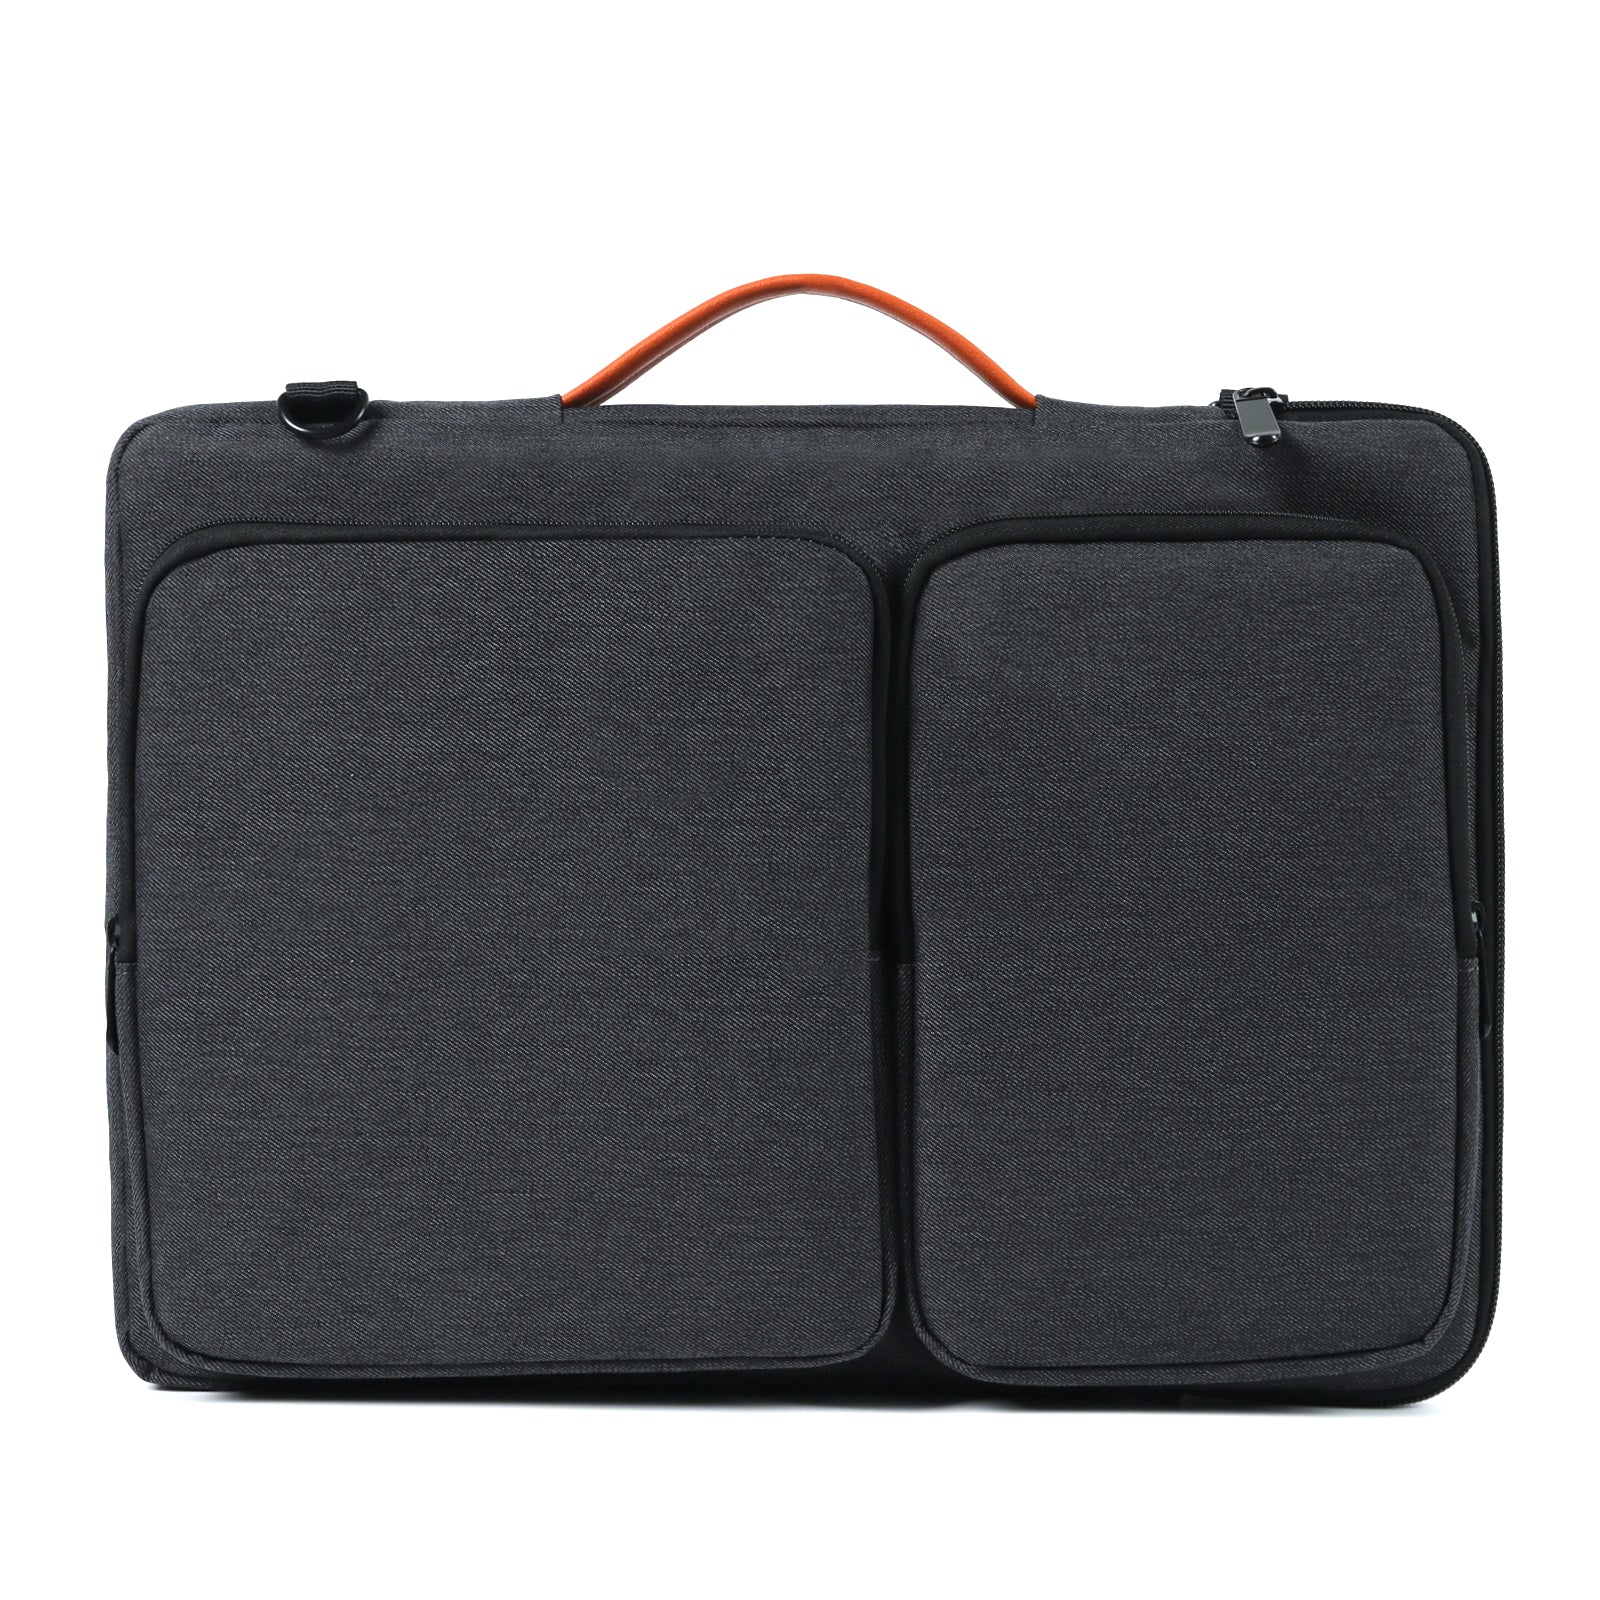 TAN.TOMI Eine Herrentasche für geschäftliche Zwecke mit Platz für Laptop und Tablet, als Handtasche, Umhängetasche oder zusammen mit dem Reisekoffer verwendbar.